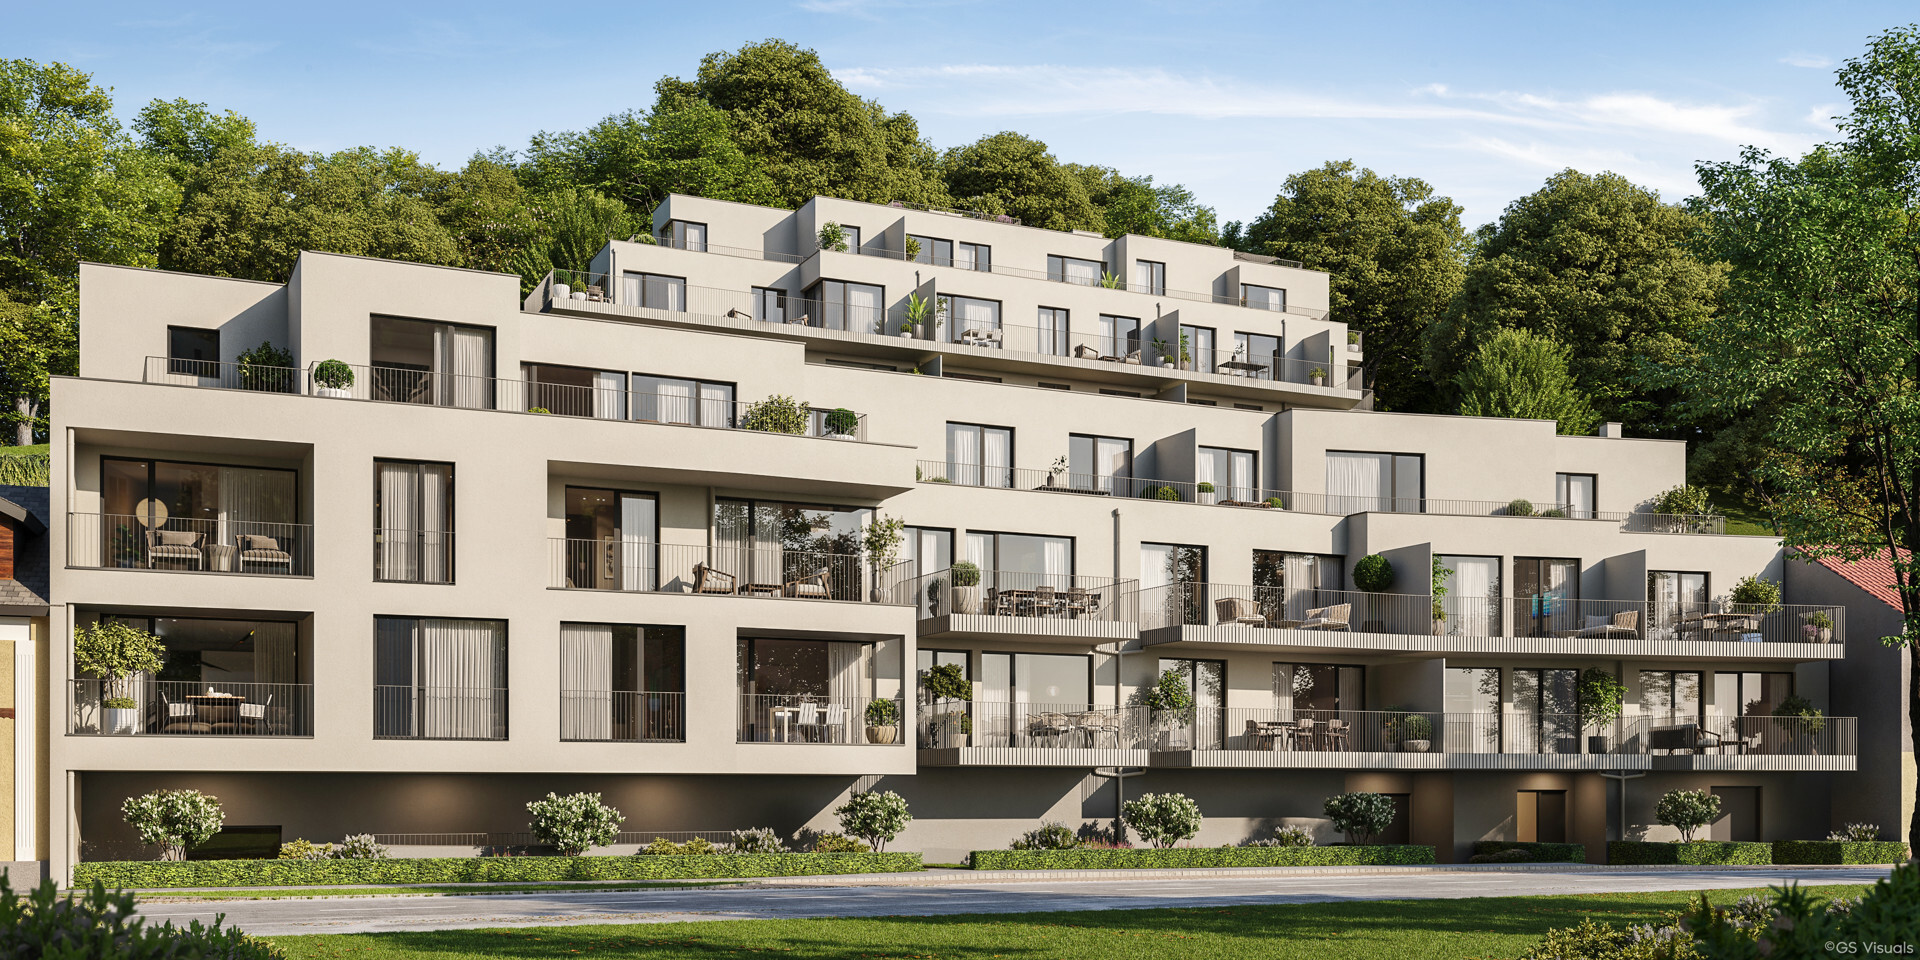 Family Living im Grünen - 4 Zimmer-Wohnung mit Loggia und Balkon zu kaufen in 2391 Kaltenleutgeben